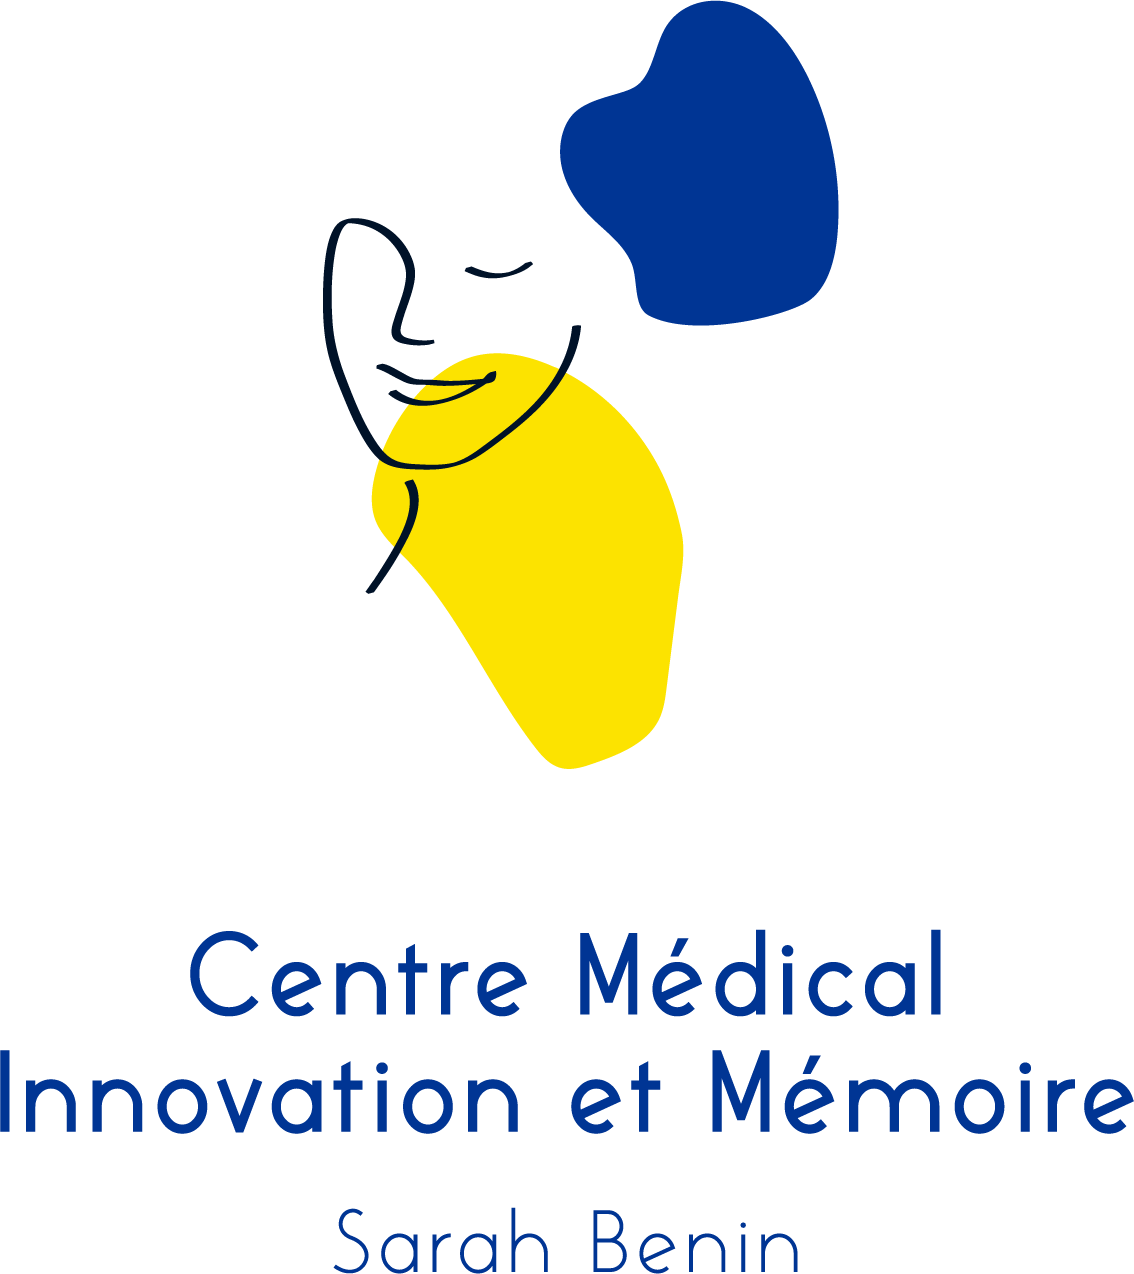 Centre Médical Innovation et Mémoire - Sarah Benin à Paris